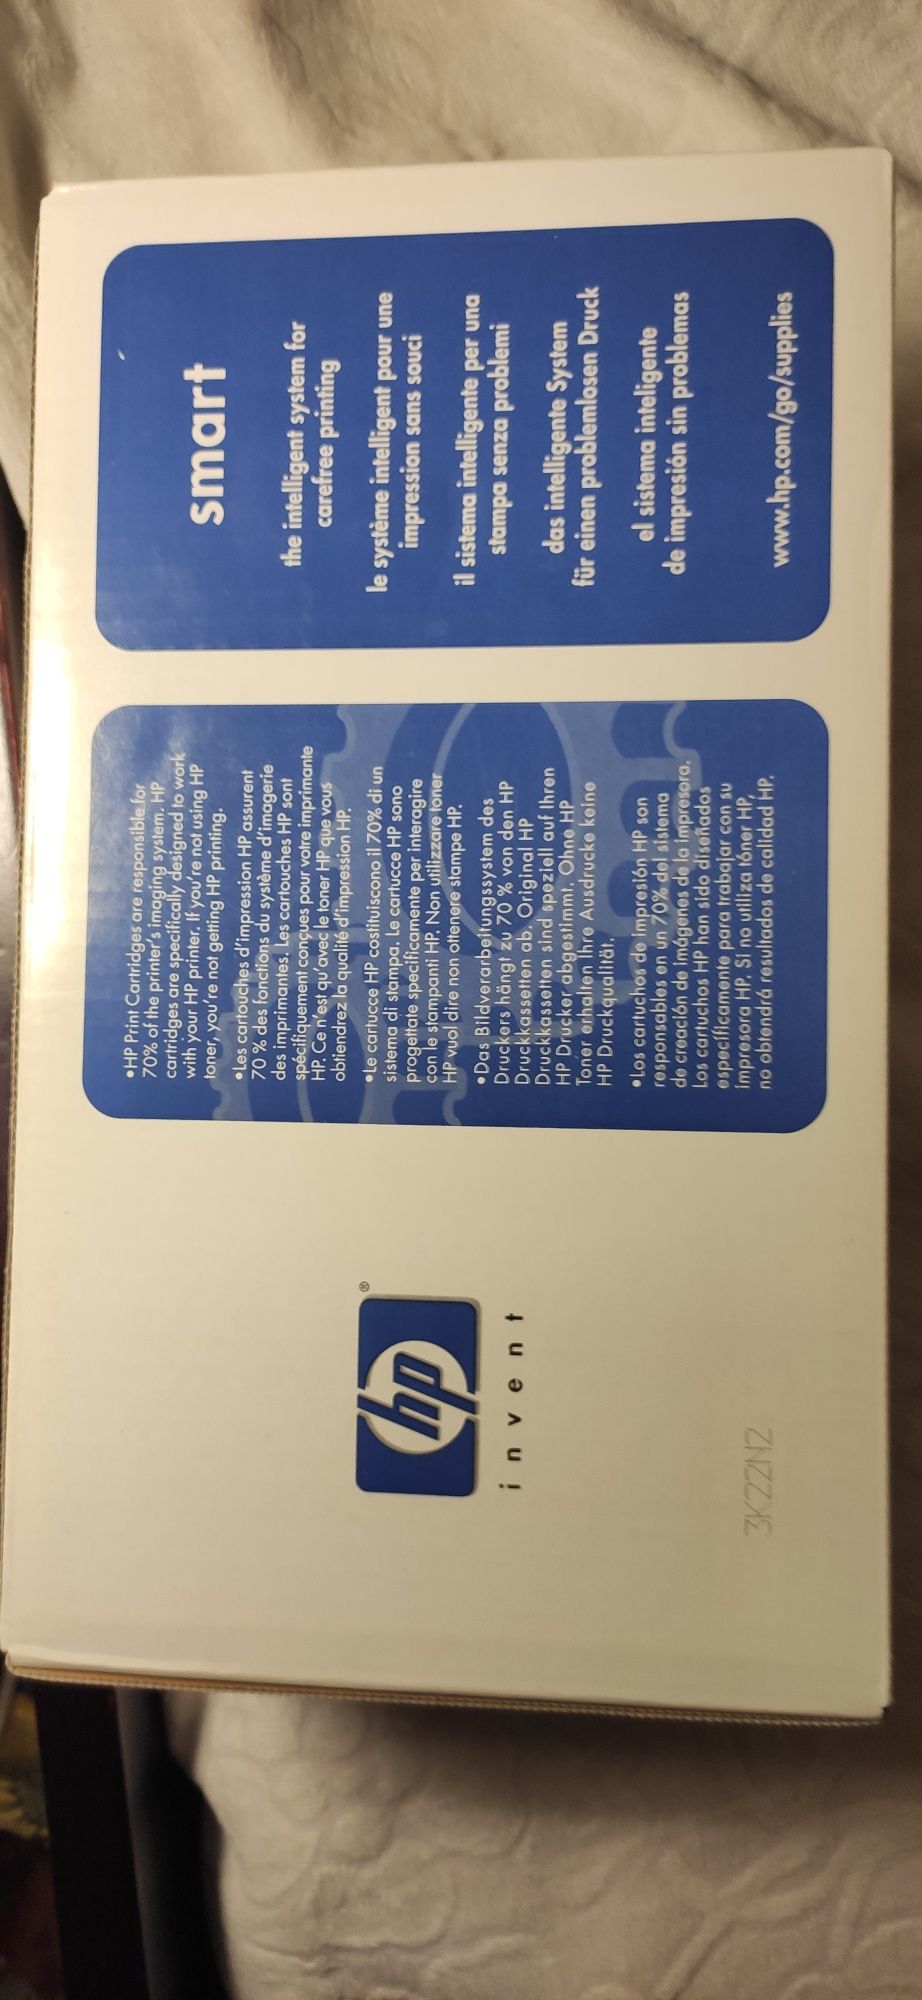 Картридж HP Q2613A для LaserJet 1300